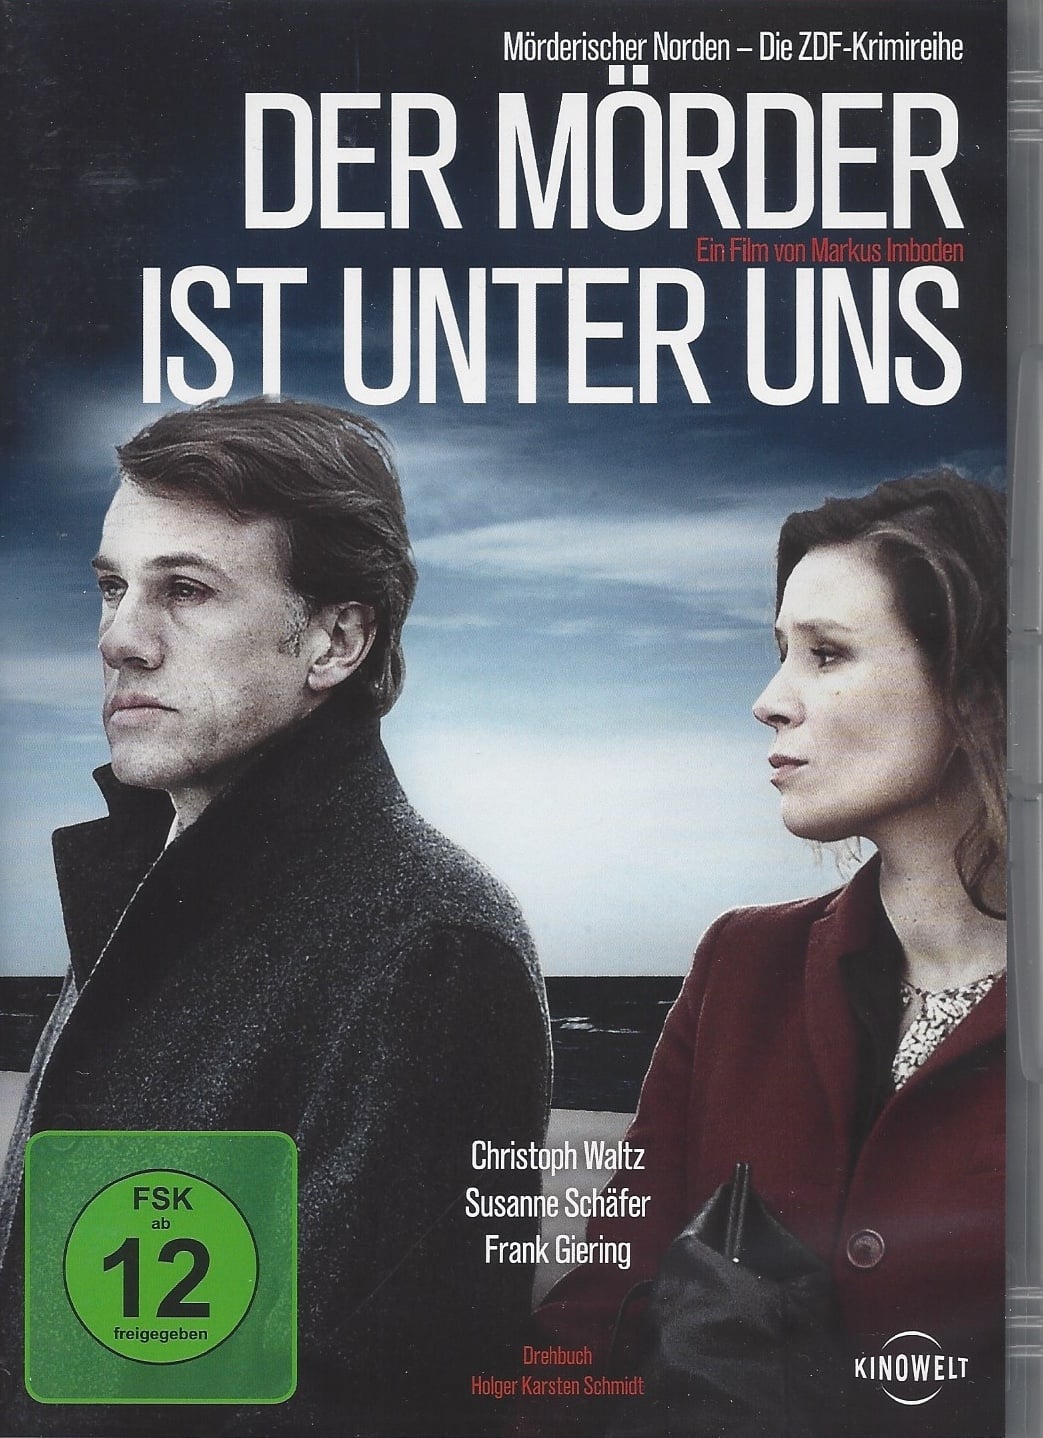 Plakat von "Der Mörder ist unter uns"